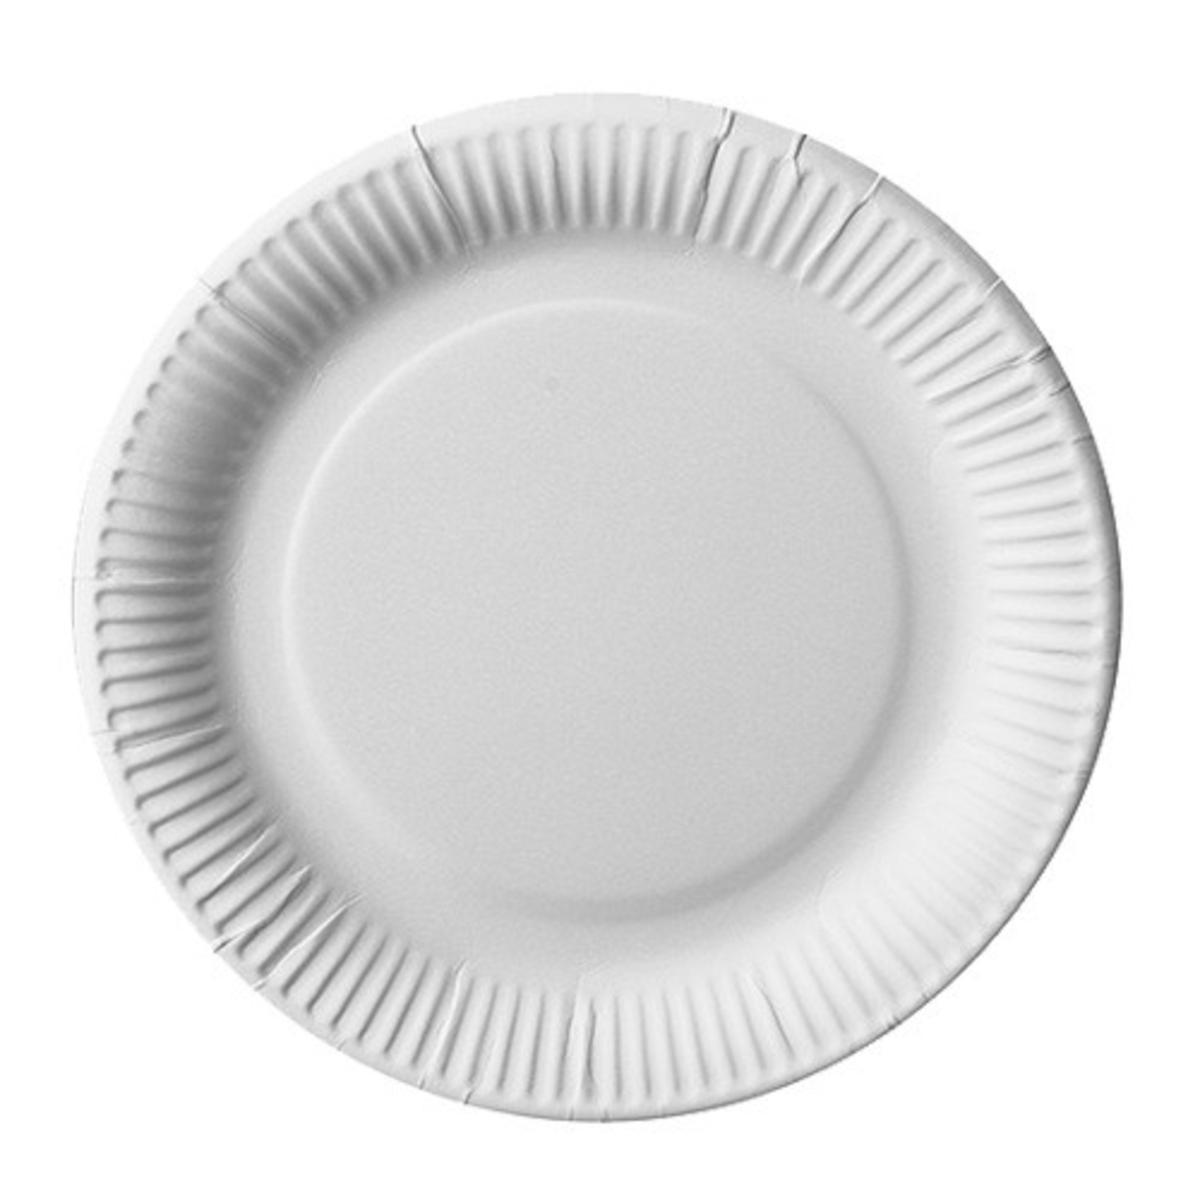 50 assiettes jetables en carton - ø 23 cm - Blanc